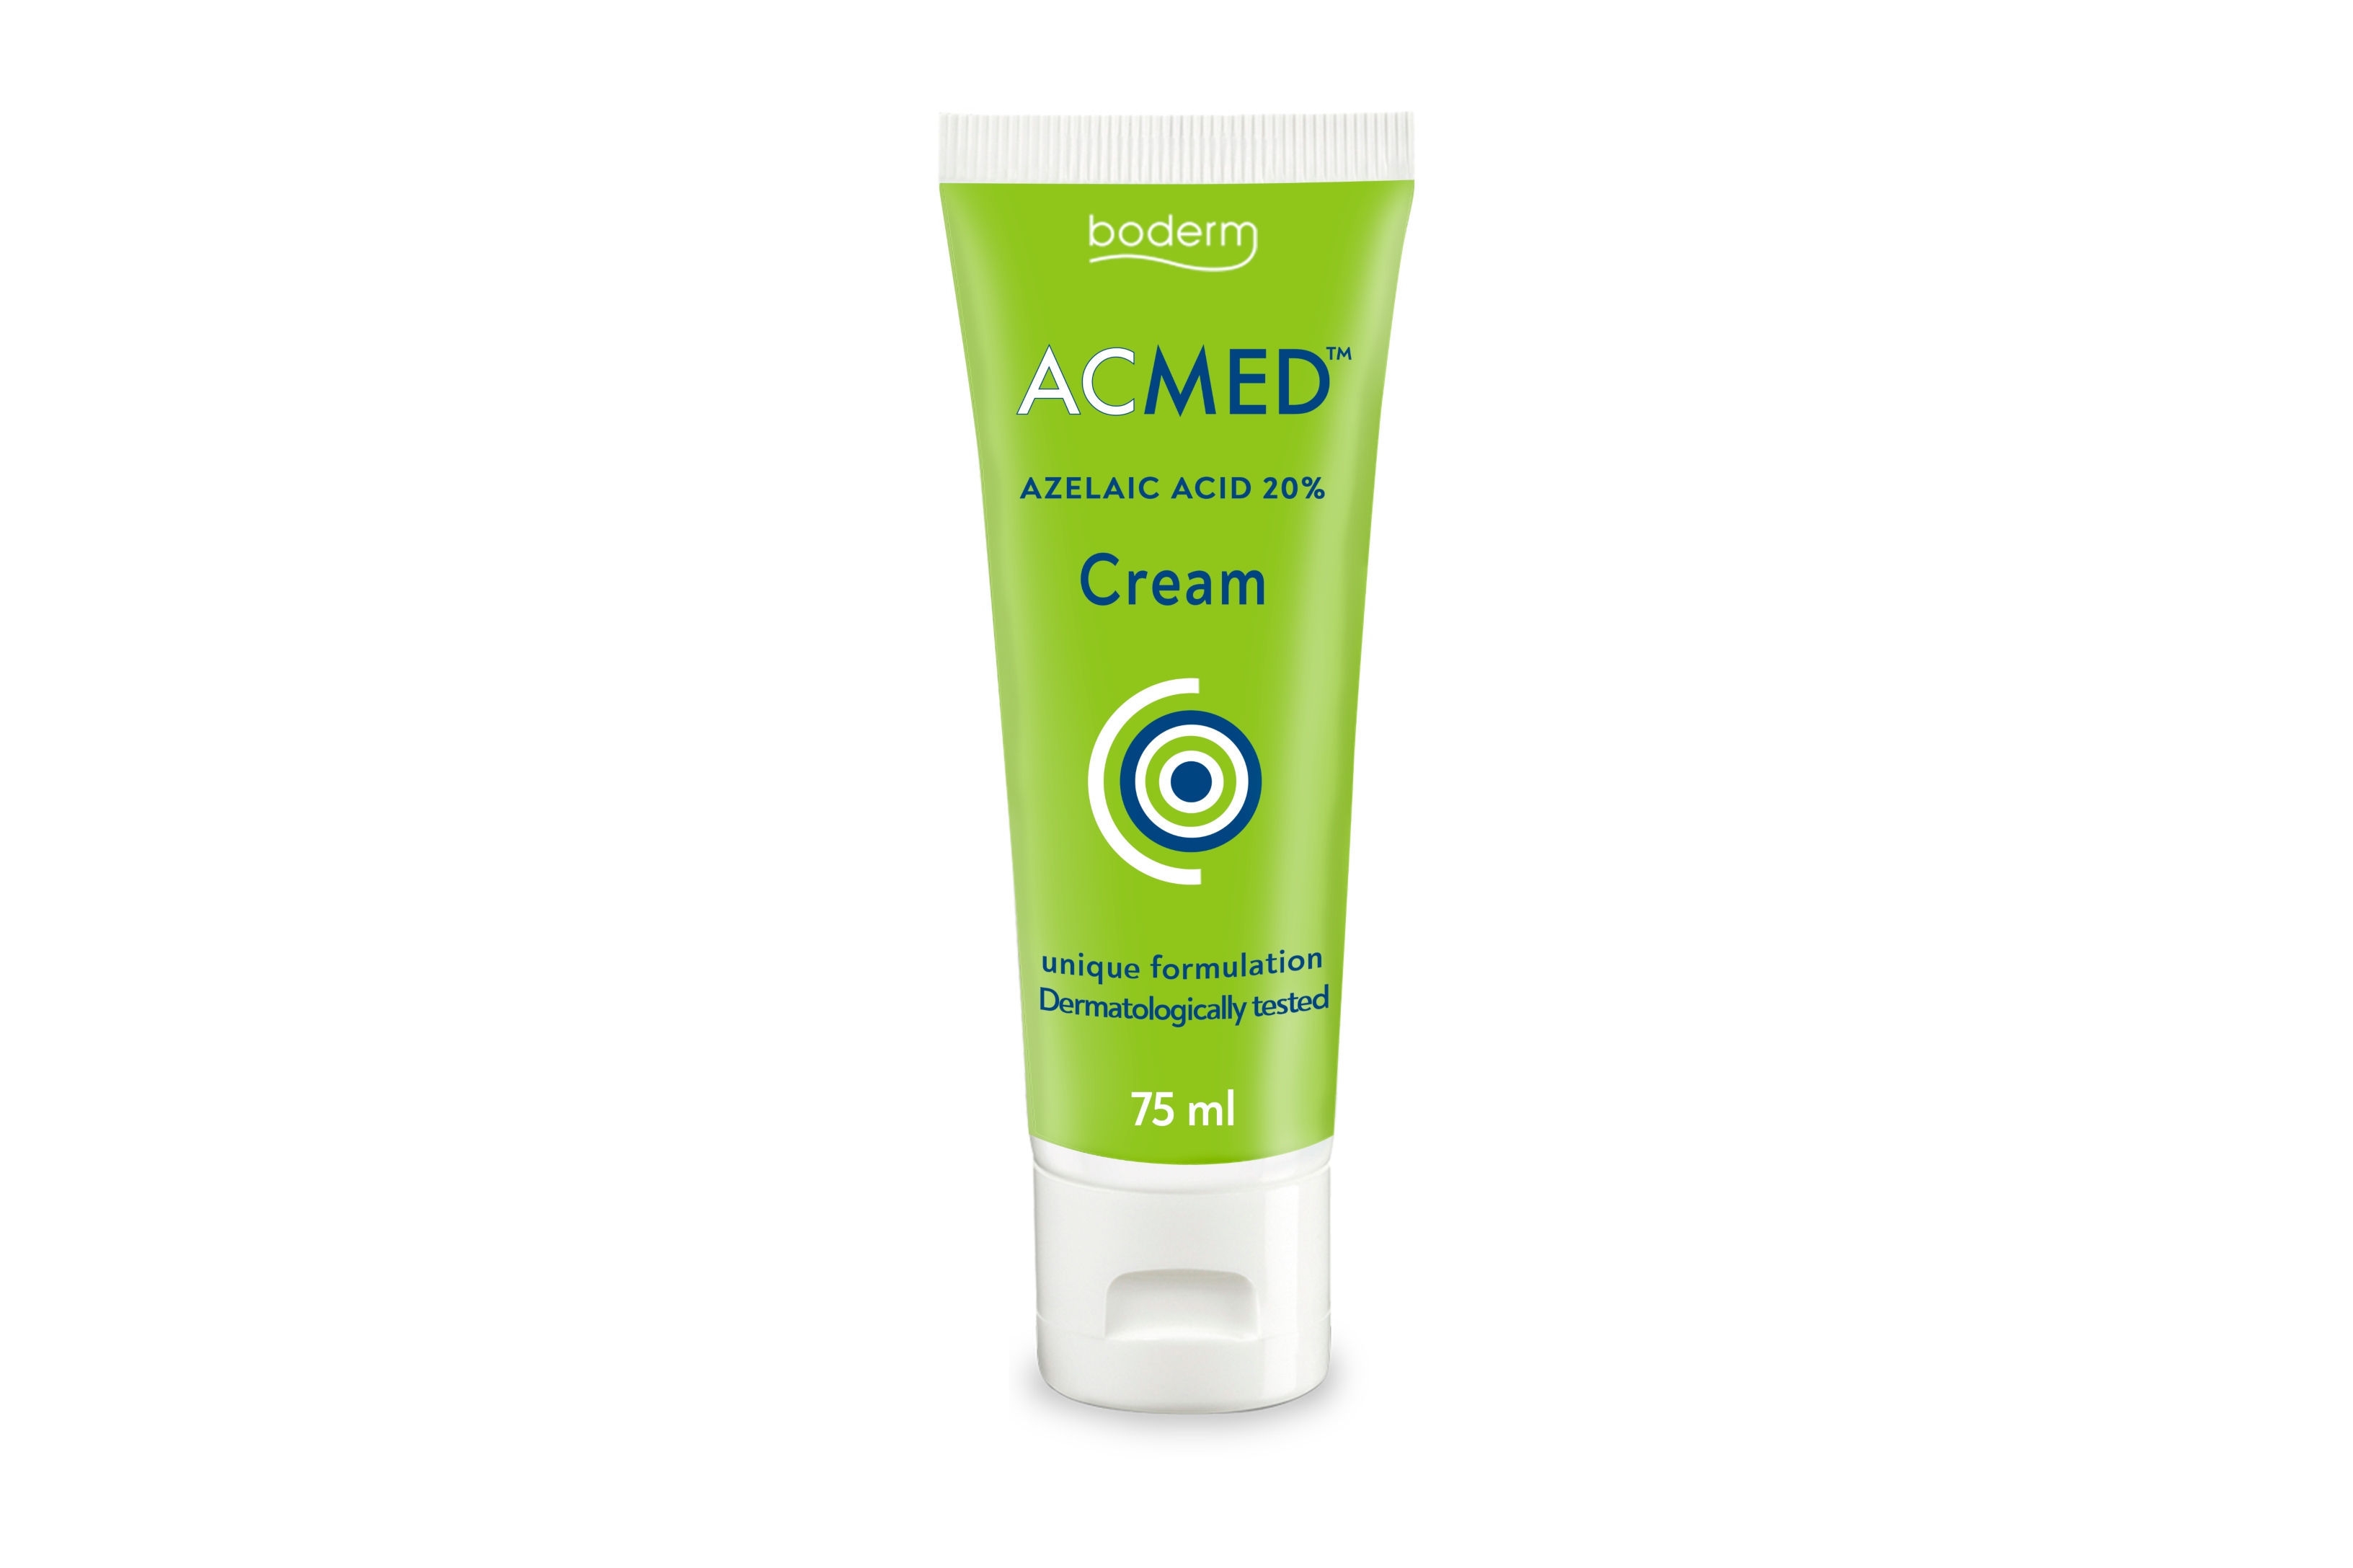 Cream 'Azelaic Acid 20%' from Boderm Acmed